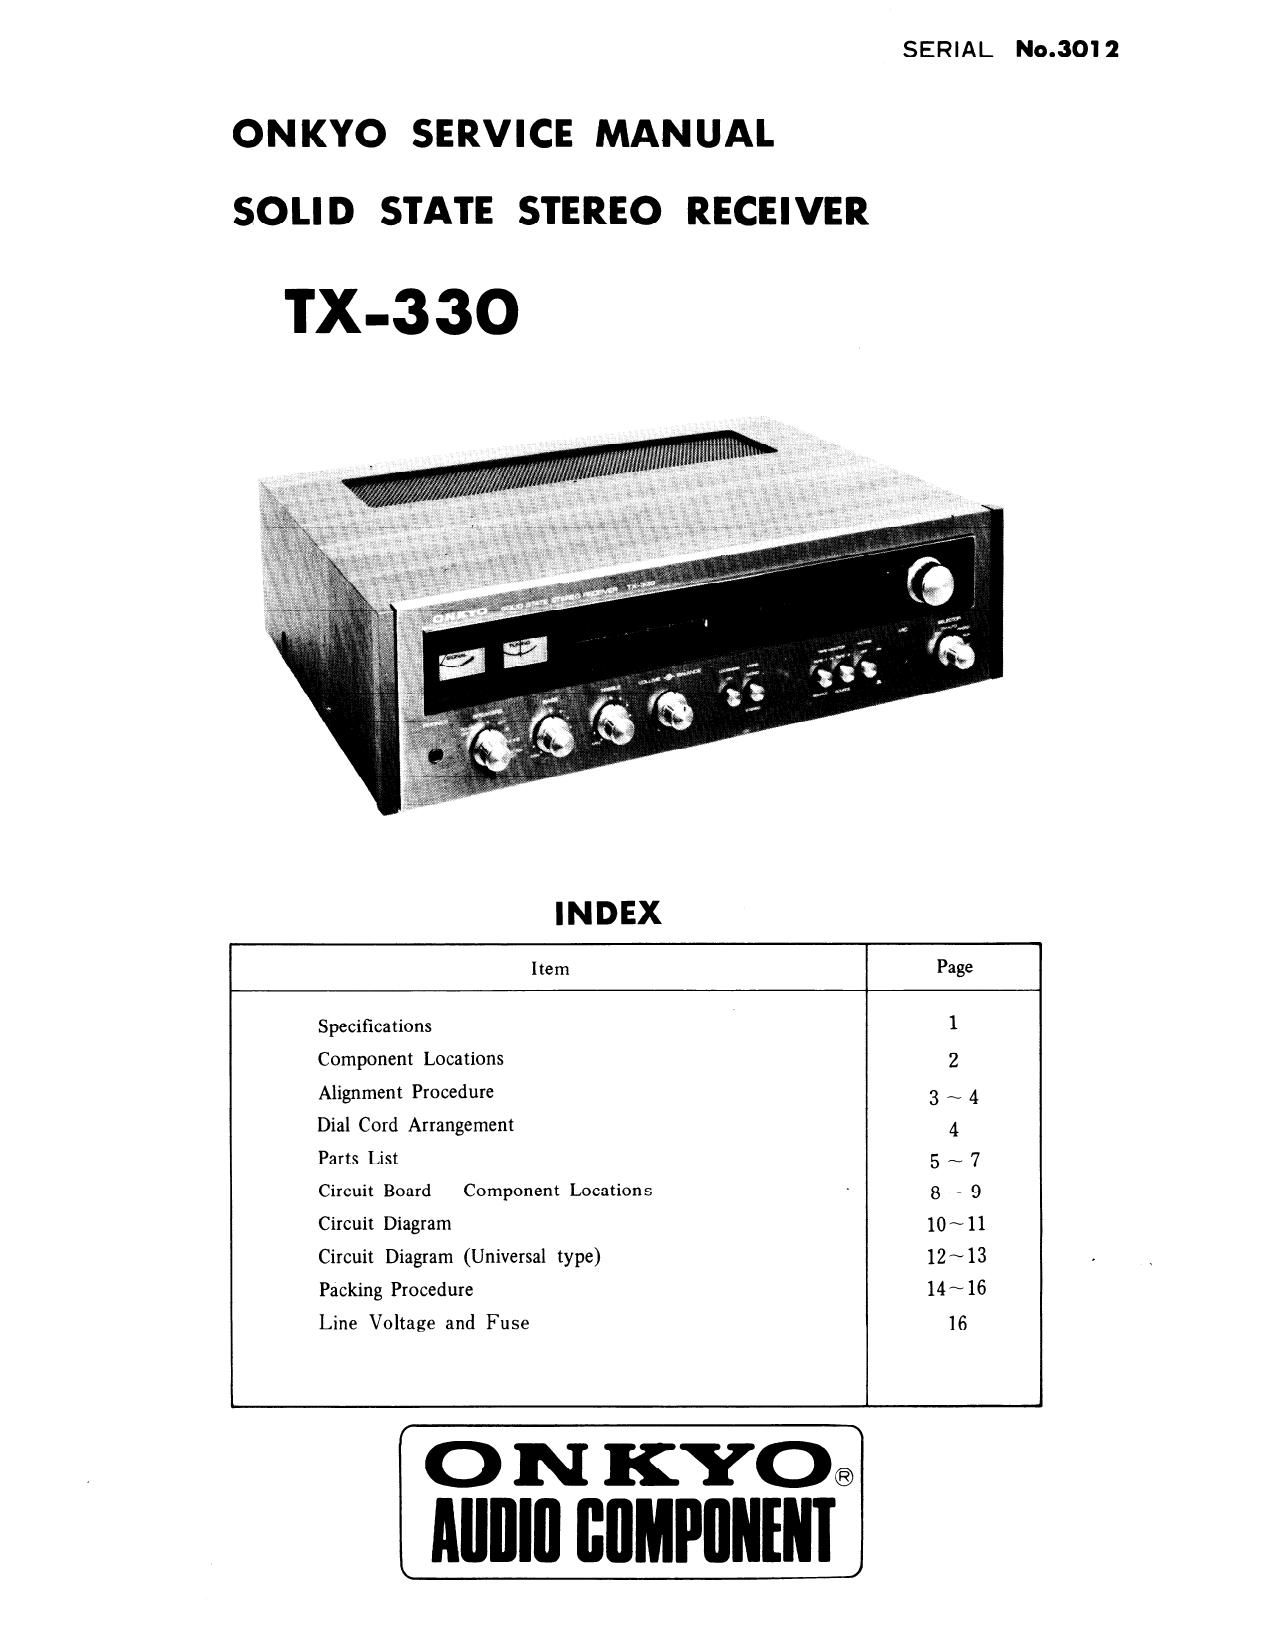 Onkyo TX 330 Service Manual